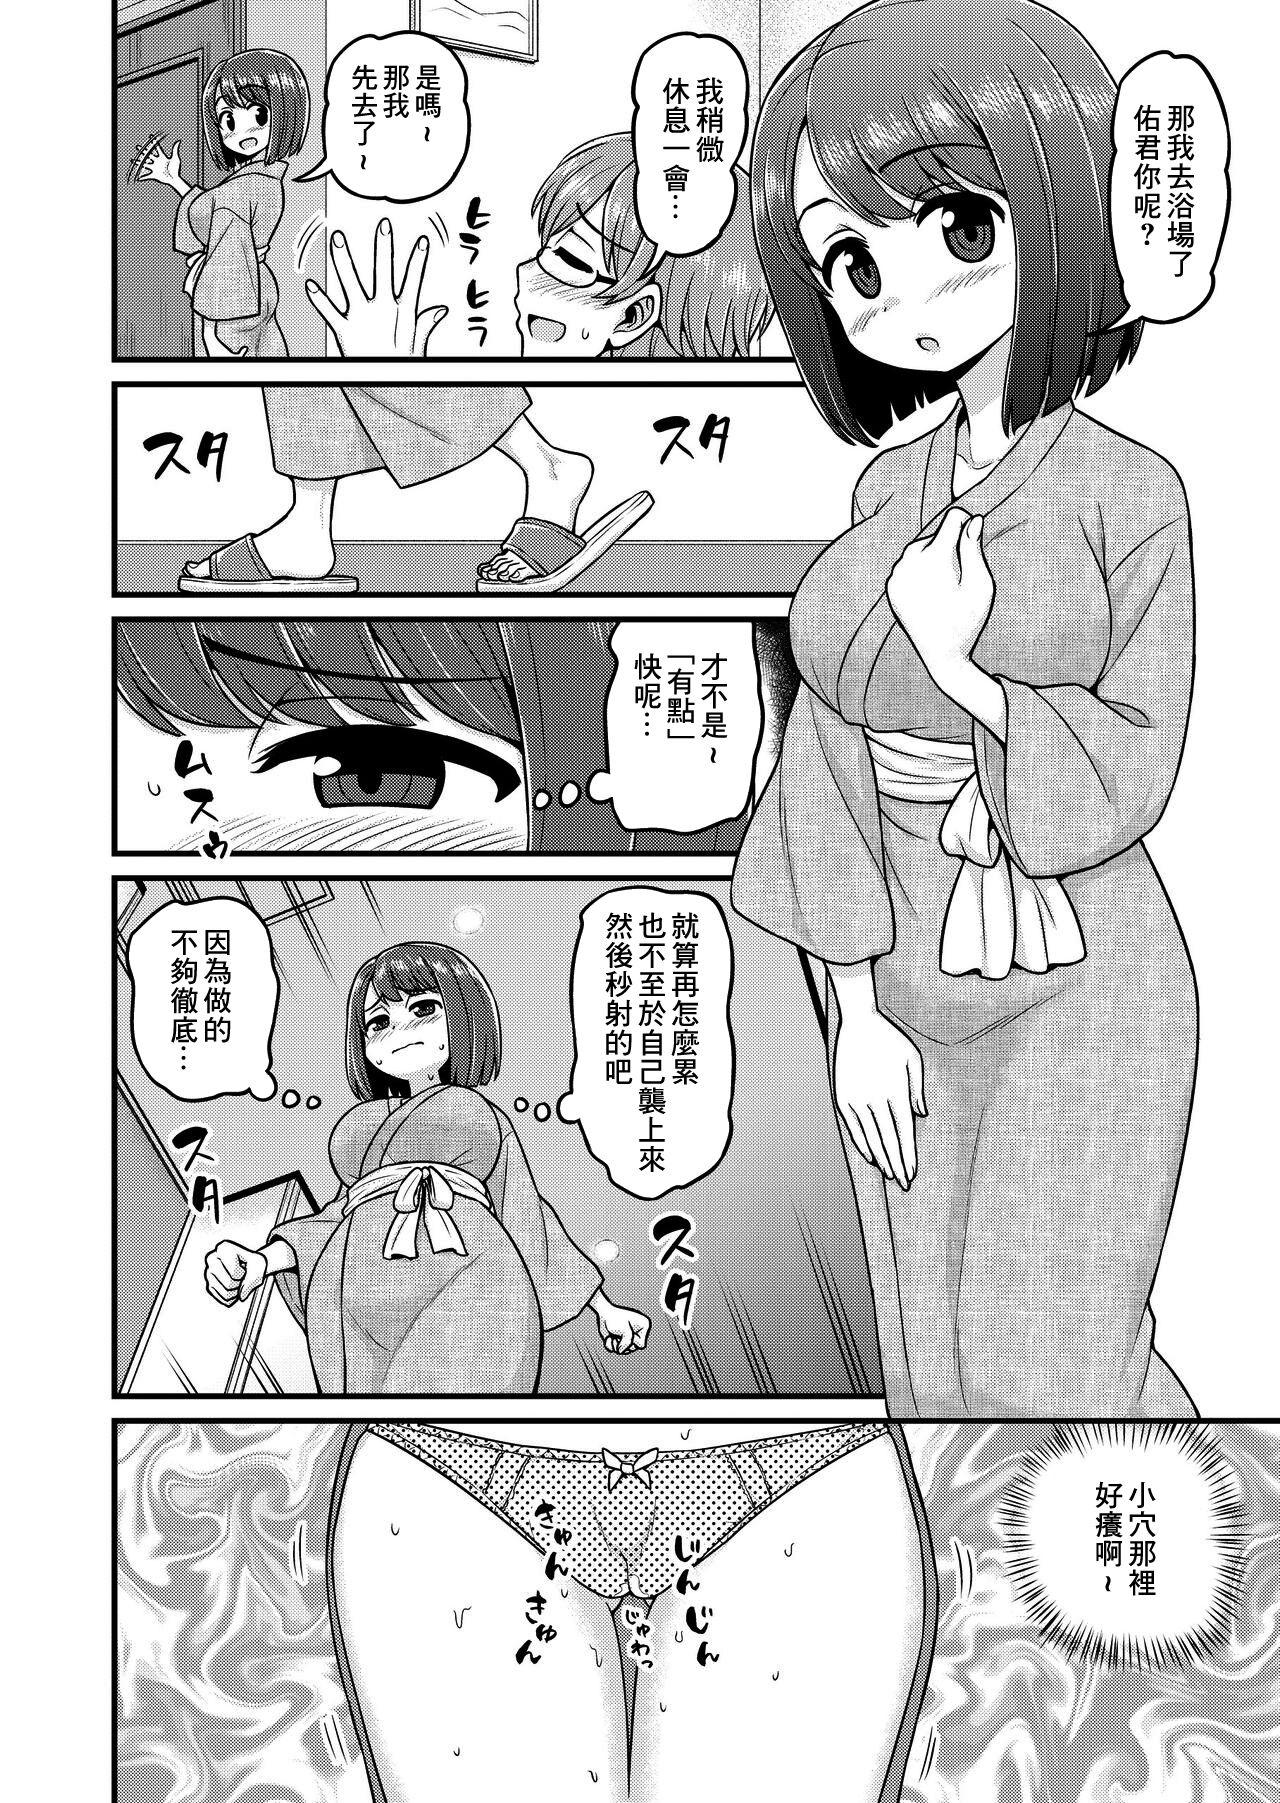 Onsen Netorare Manga 4